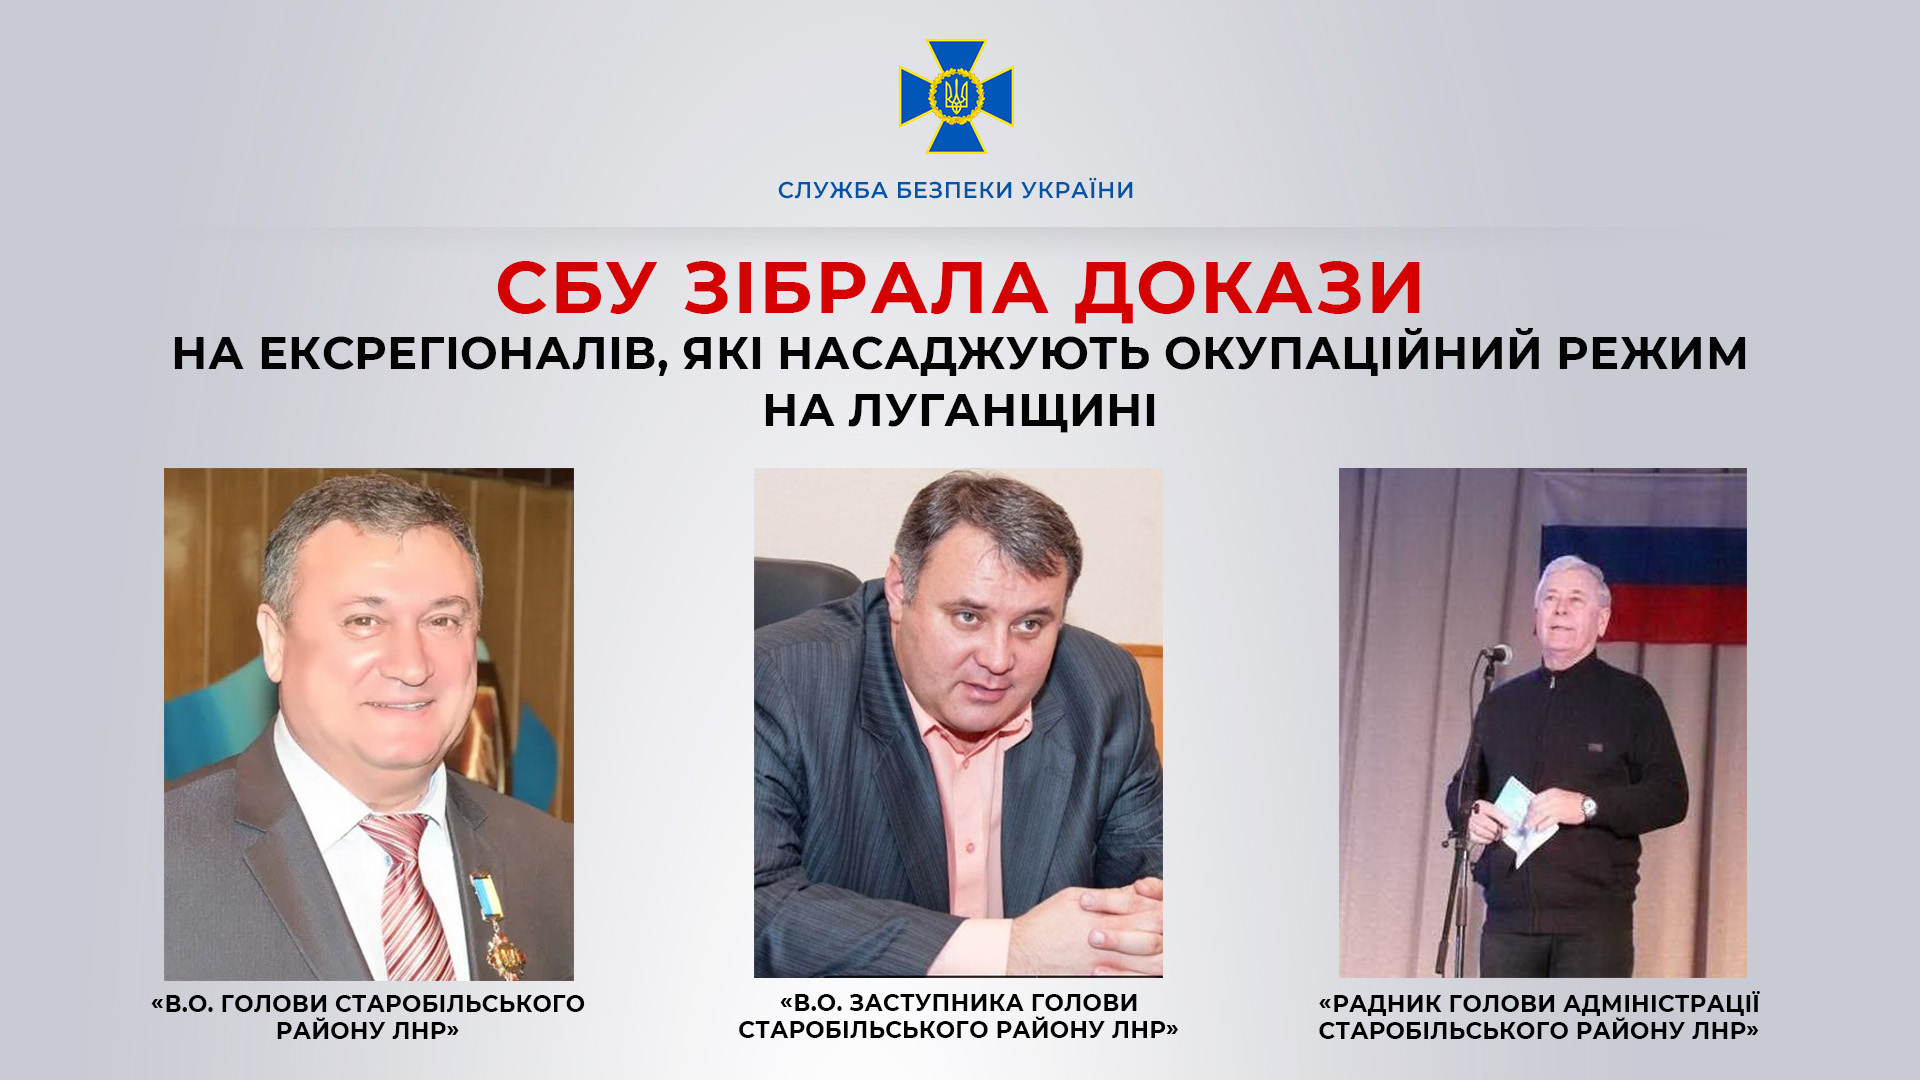 СБУ зібрала докази на ексрегіоналів, які насаджують окупаційний режим на Луганщині